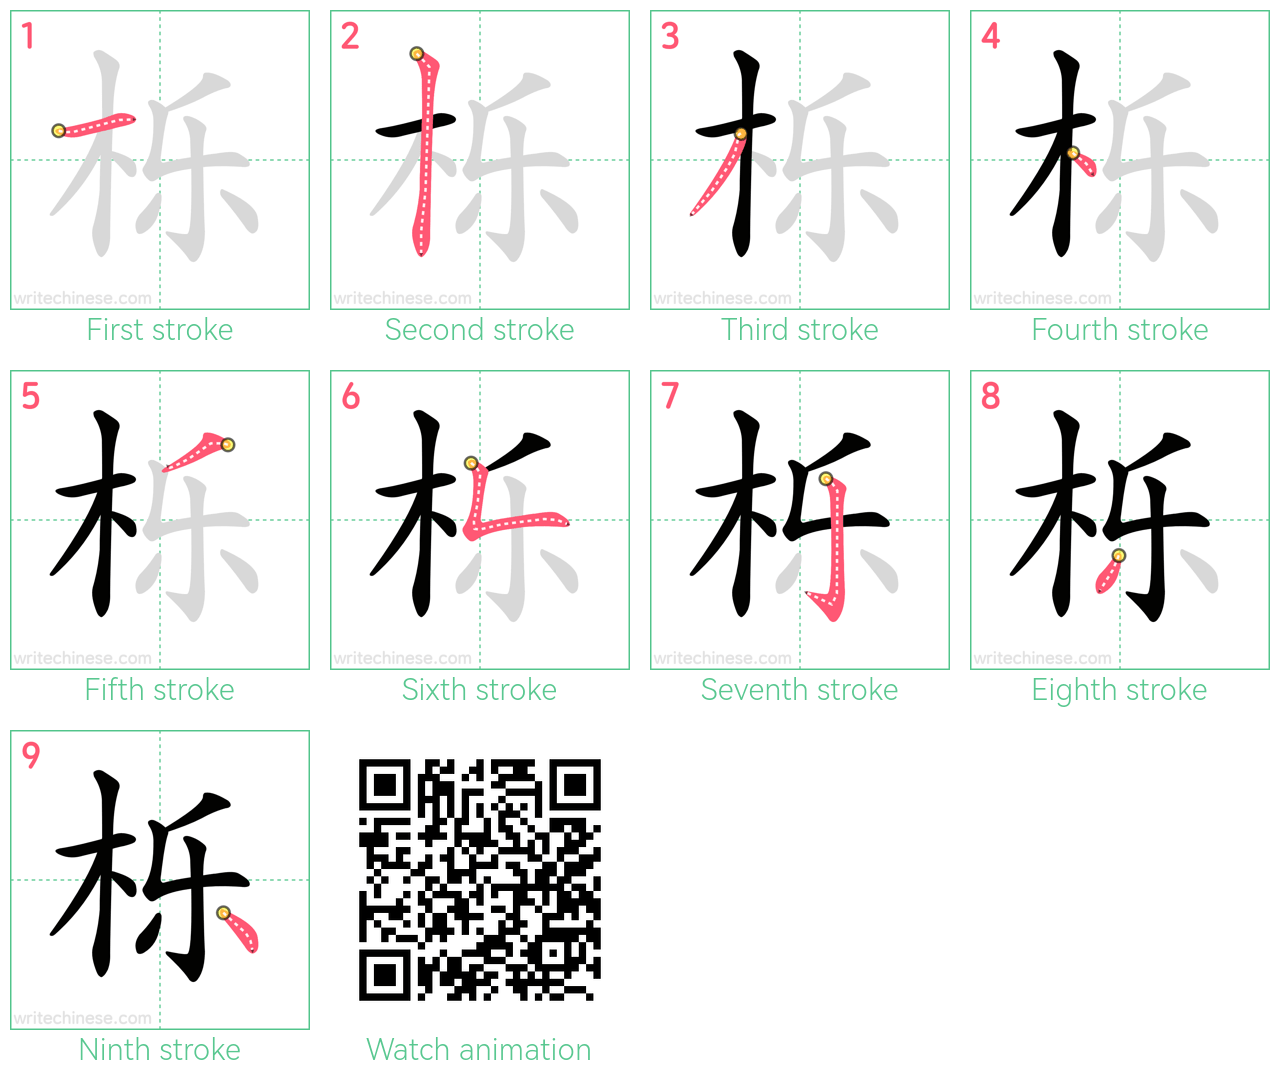 栎 step-by-step stroke order diagrams